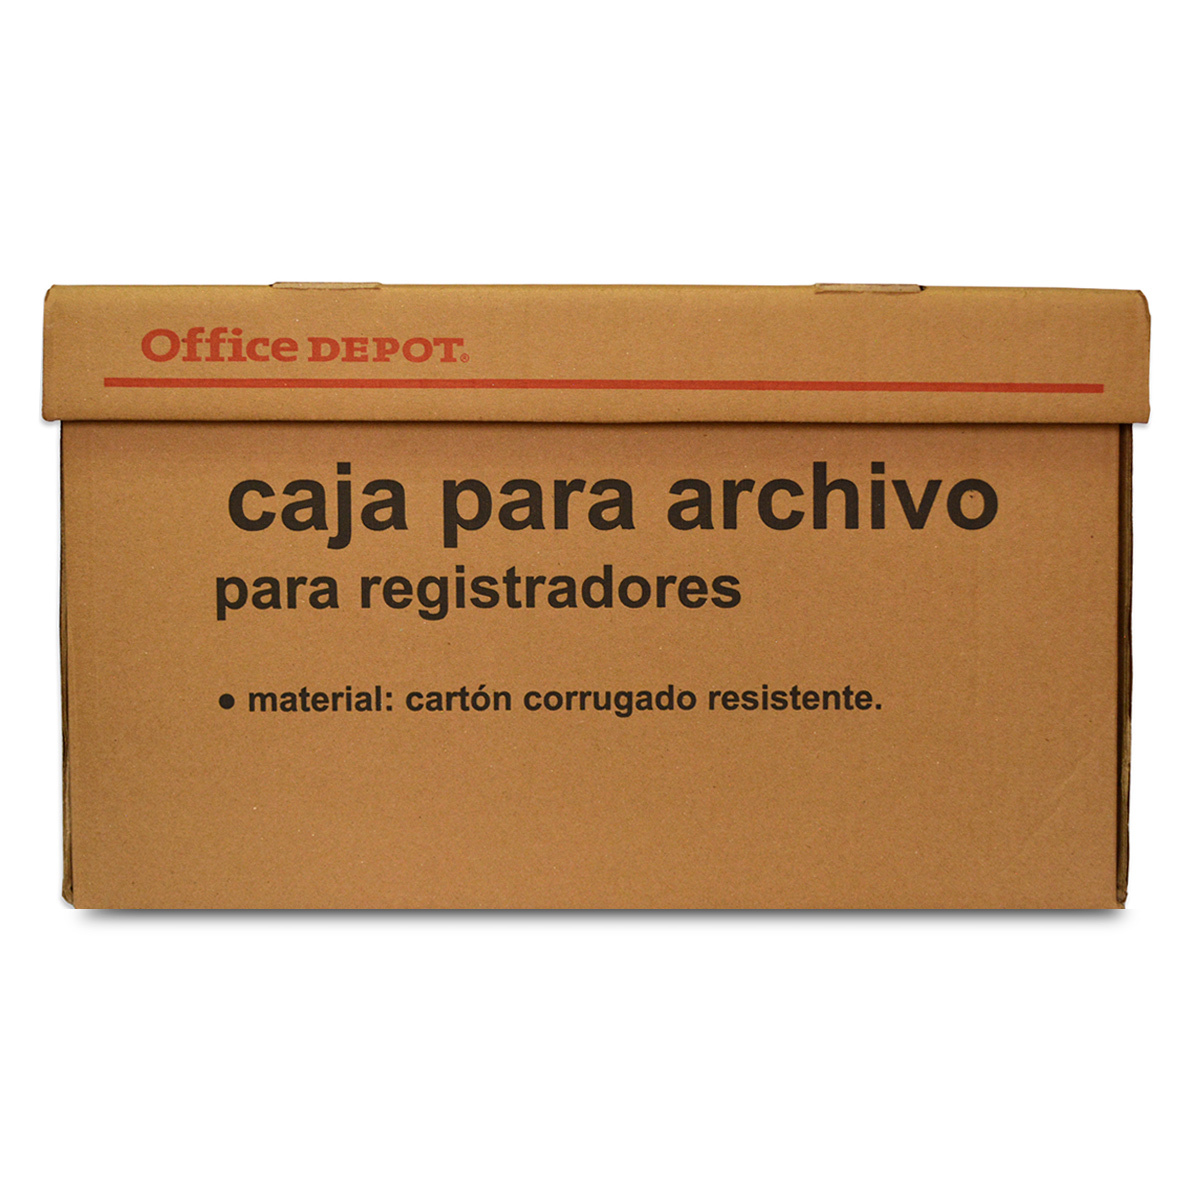 Descubre todo sobre las cajas archivadoras¡